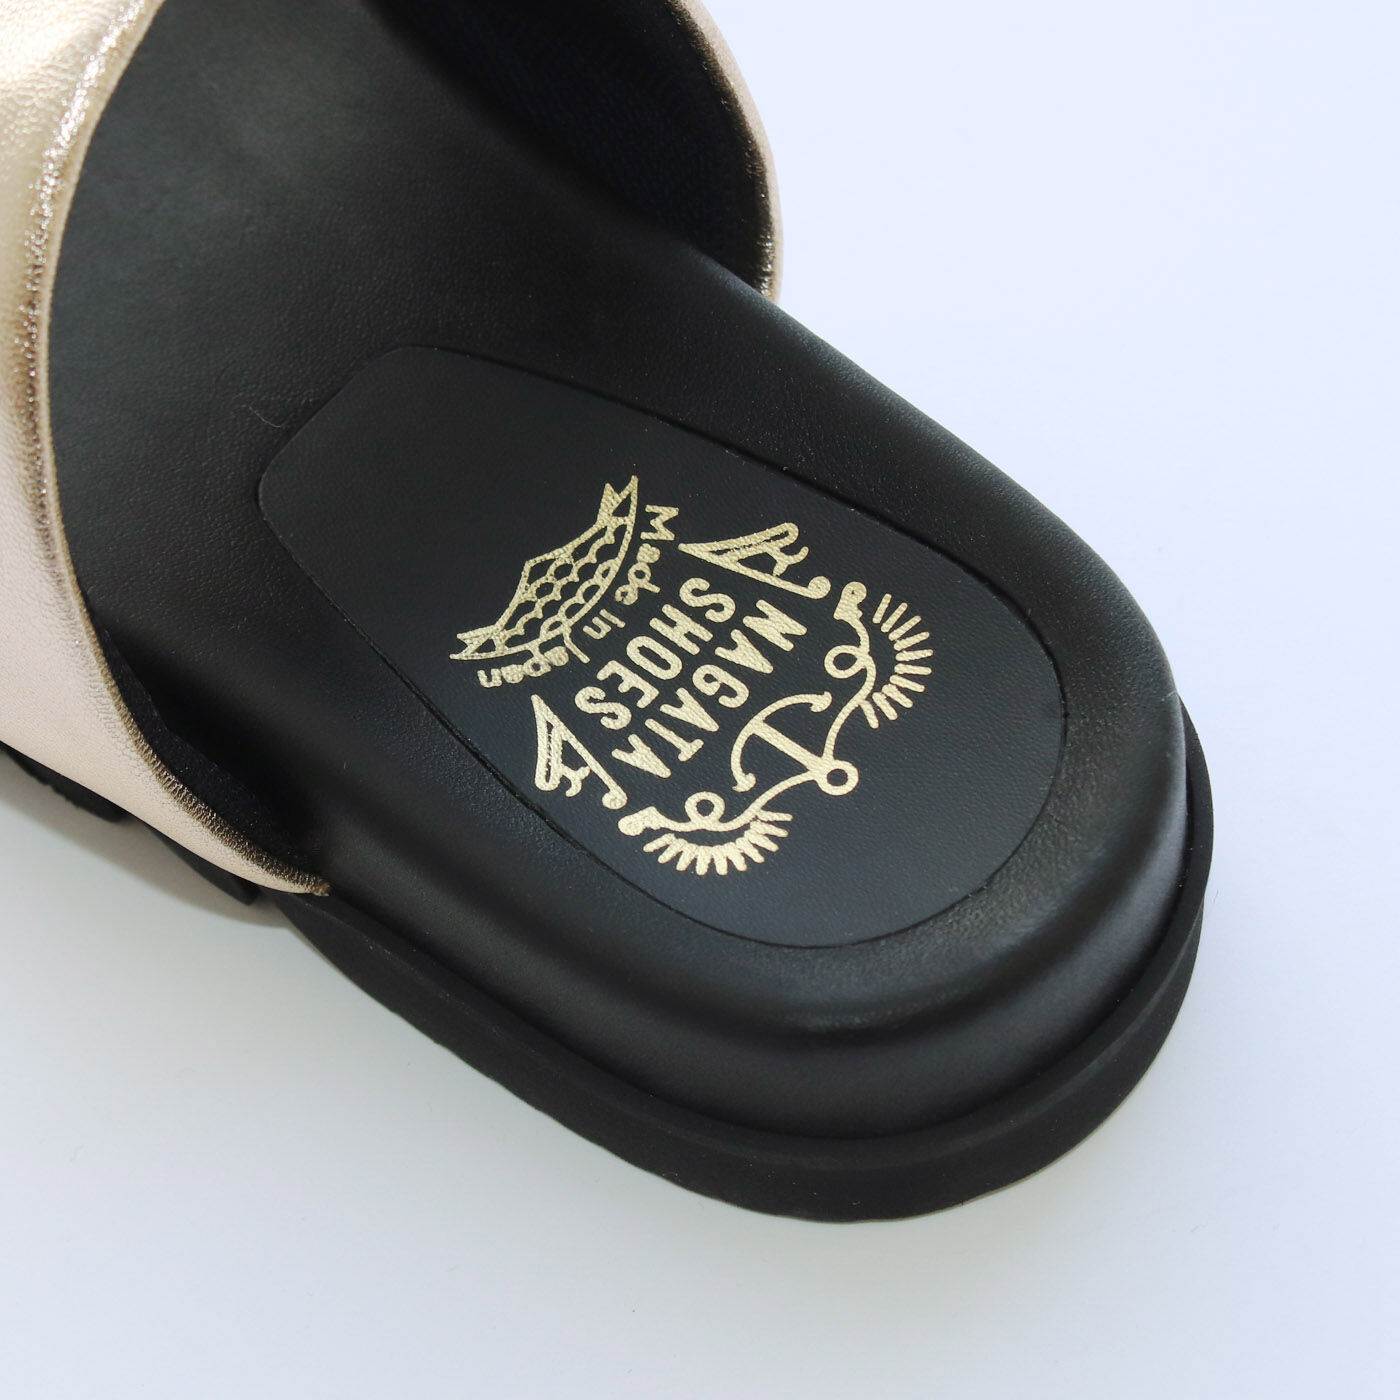 ＆Stories|靴デザイナーの理想で仕上げた 職人本革のトングシューズ〈ゴールド〉|かかとにもかわいいロゴプリント。